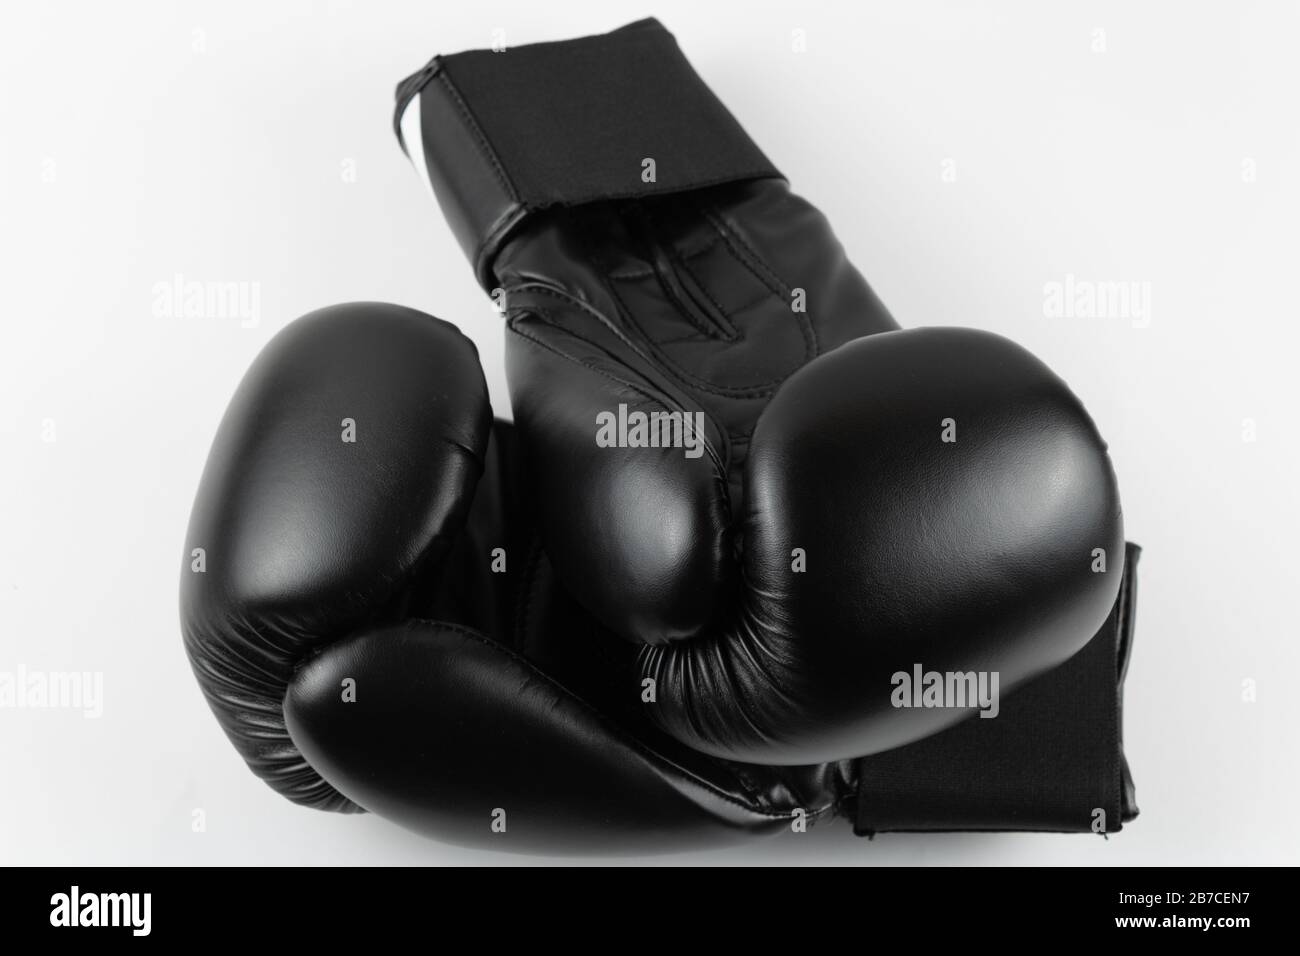 Gros plan de gants de boxe noirs sur fond blanc. Image du produit Banque D'Images